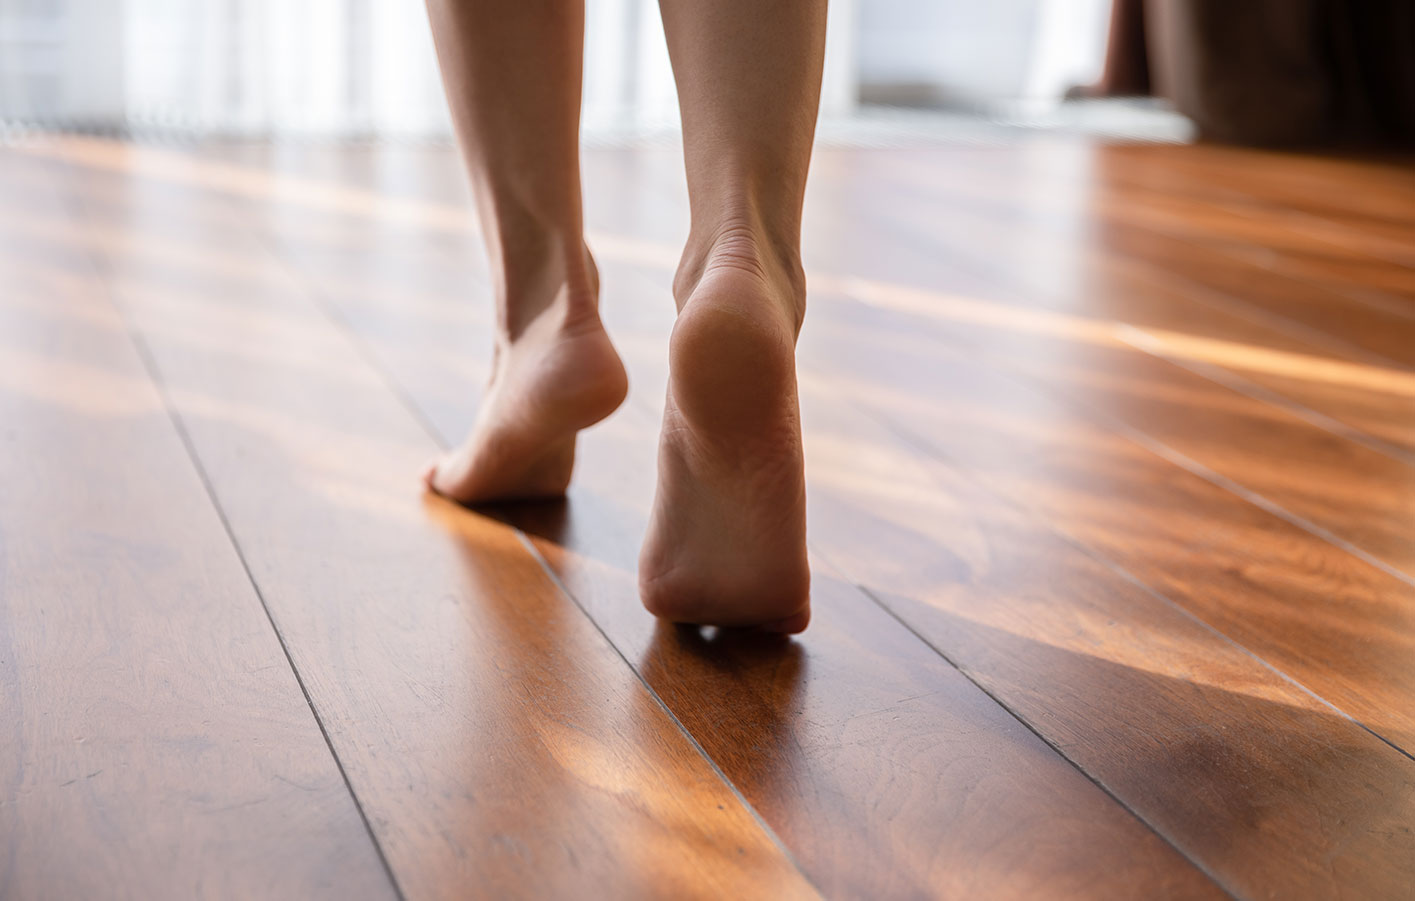 Nackte Füße laufen über einen Parkettboden